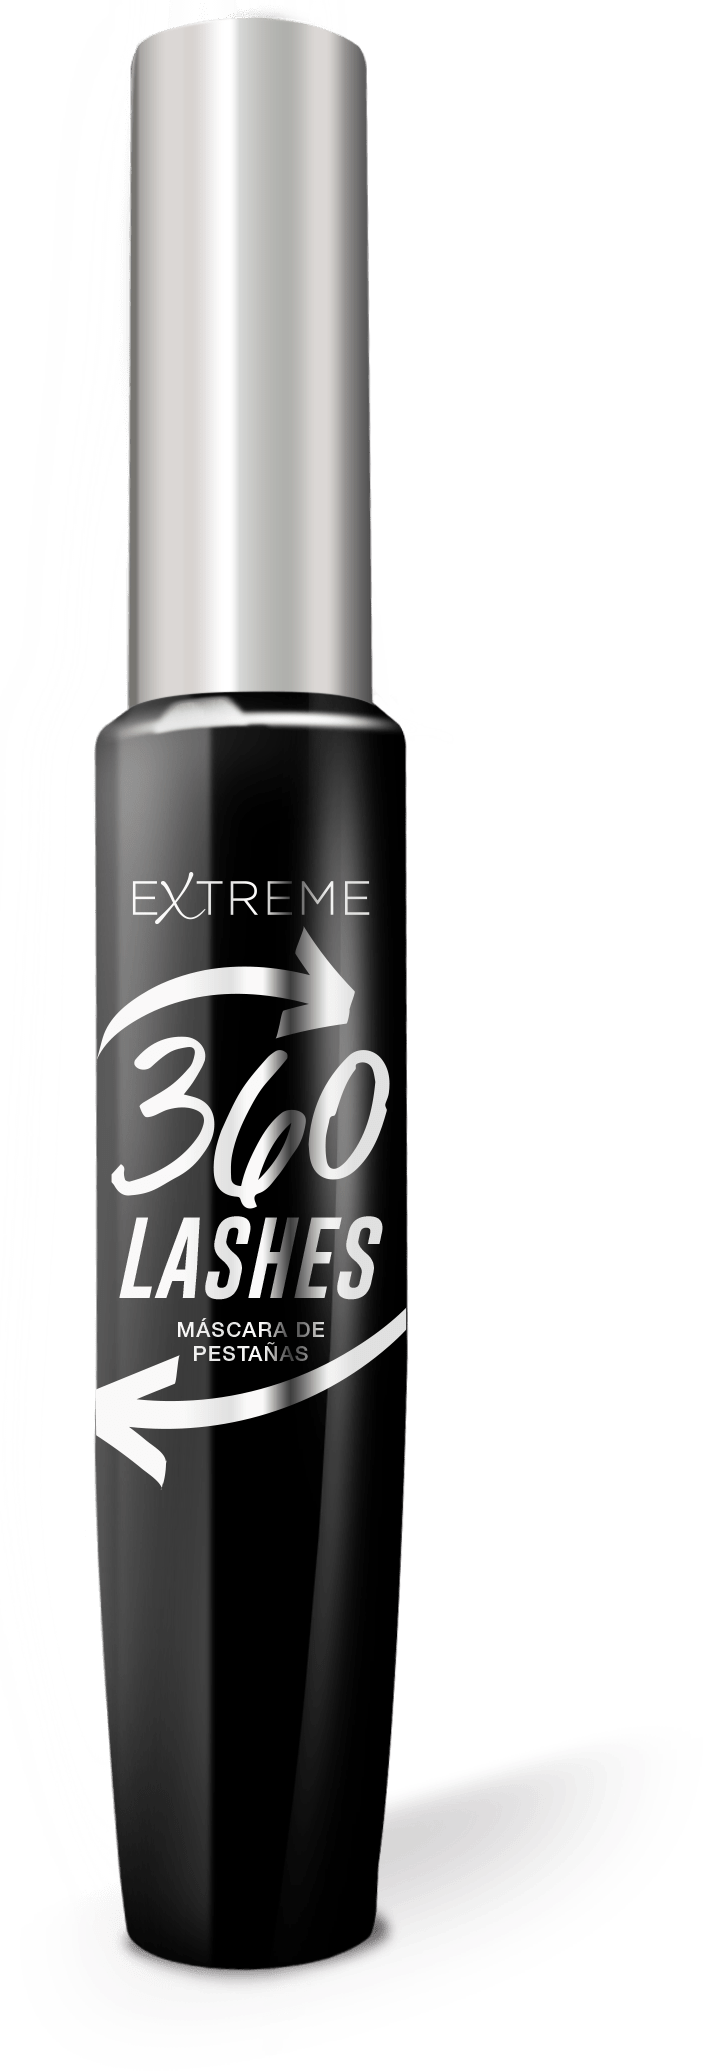 mascara-de-pestanas-extreme-360-lashes